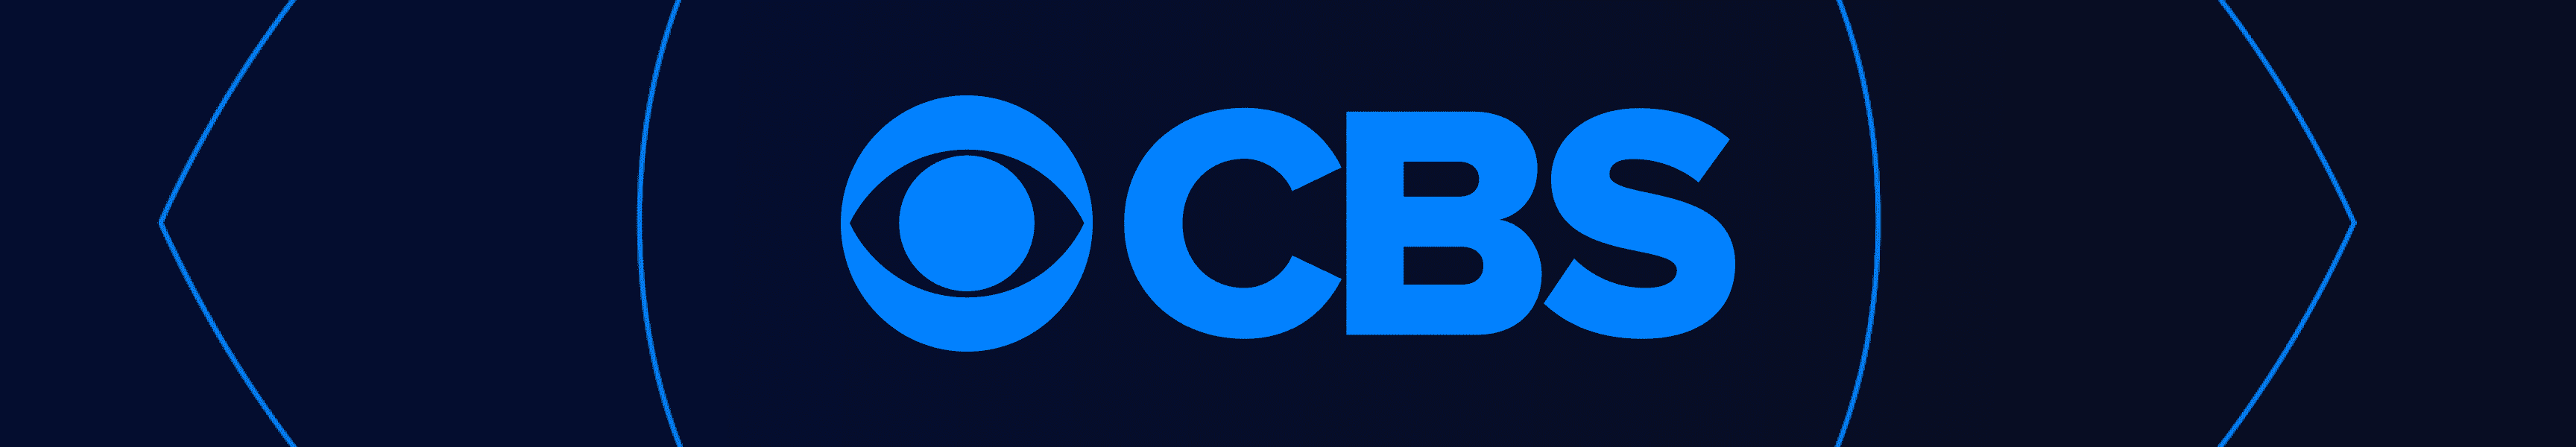 CBS Unterhaltung Becher